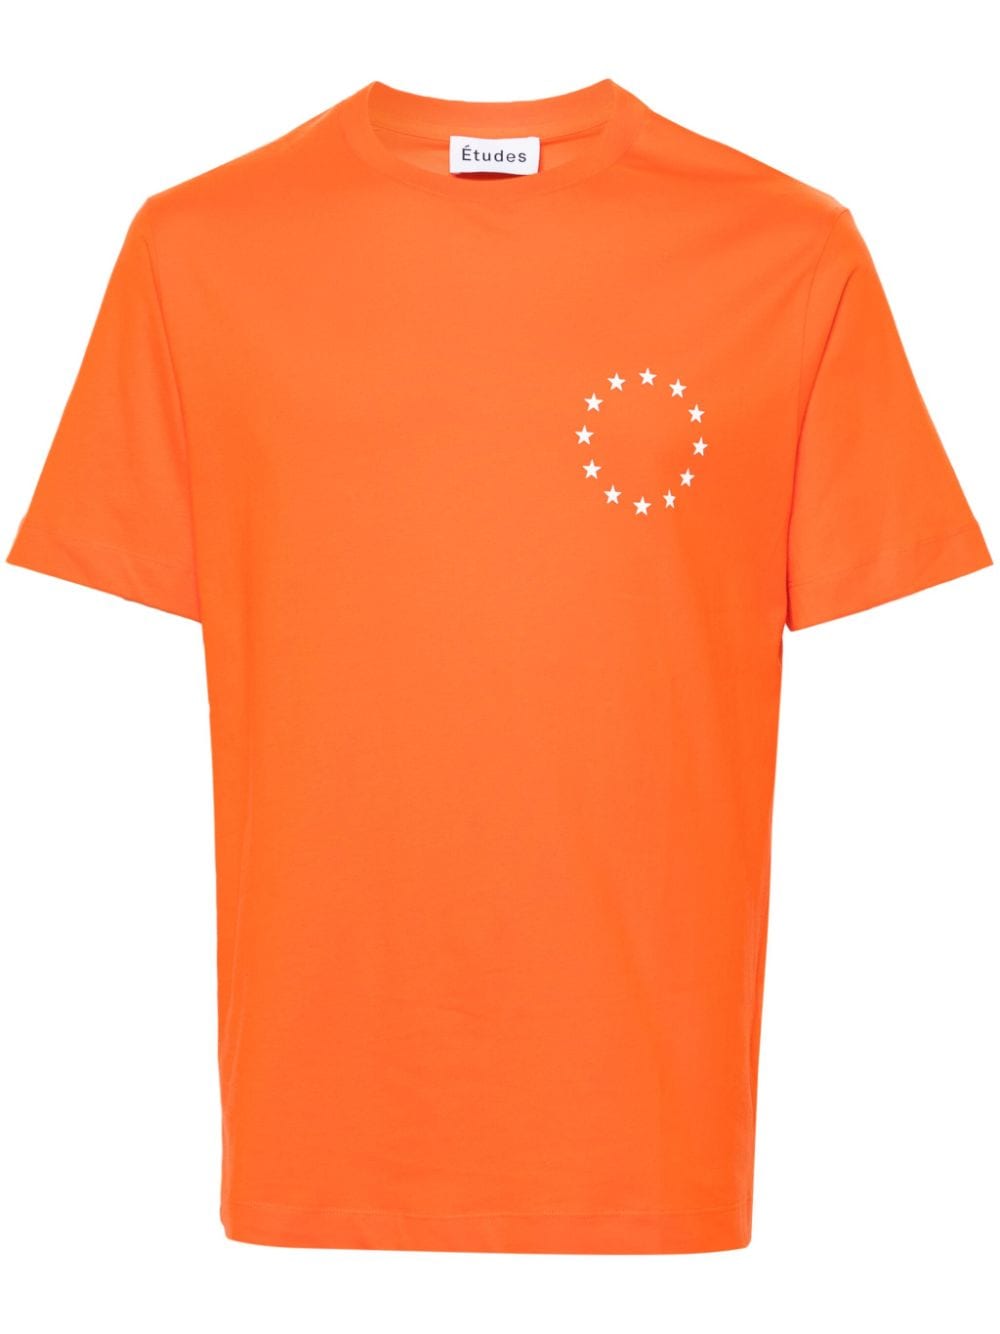 Etudes Wonder Europa T-shirt - Orange von Etudes